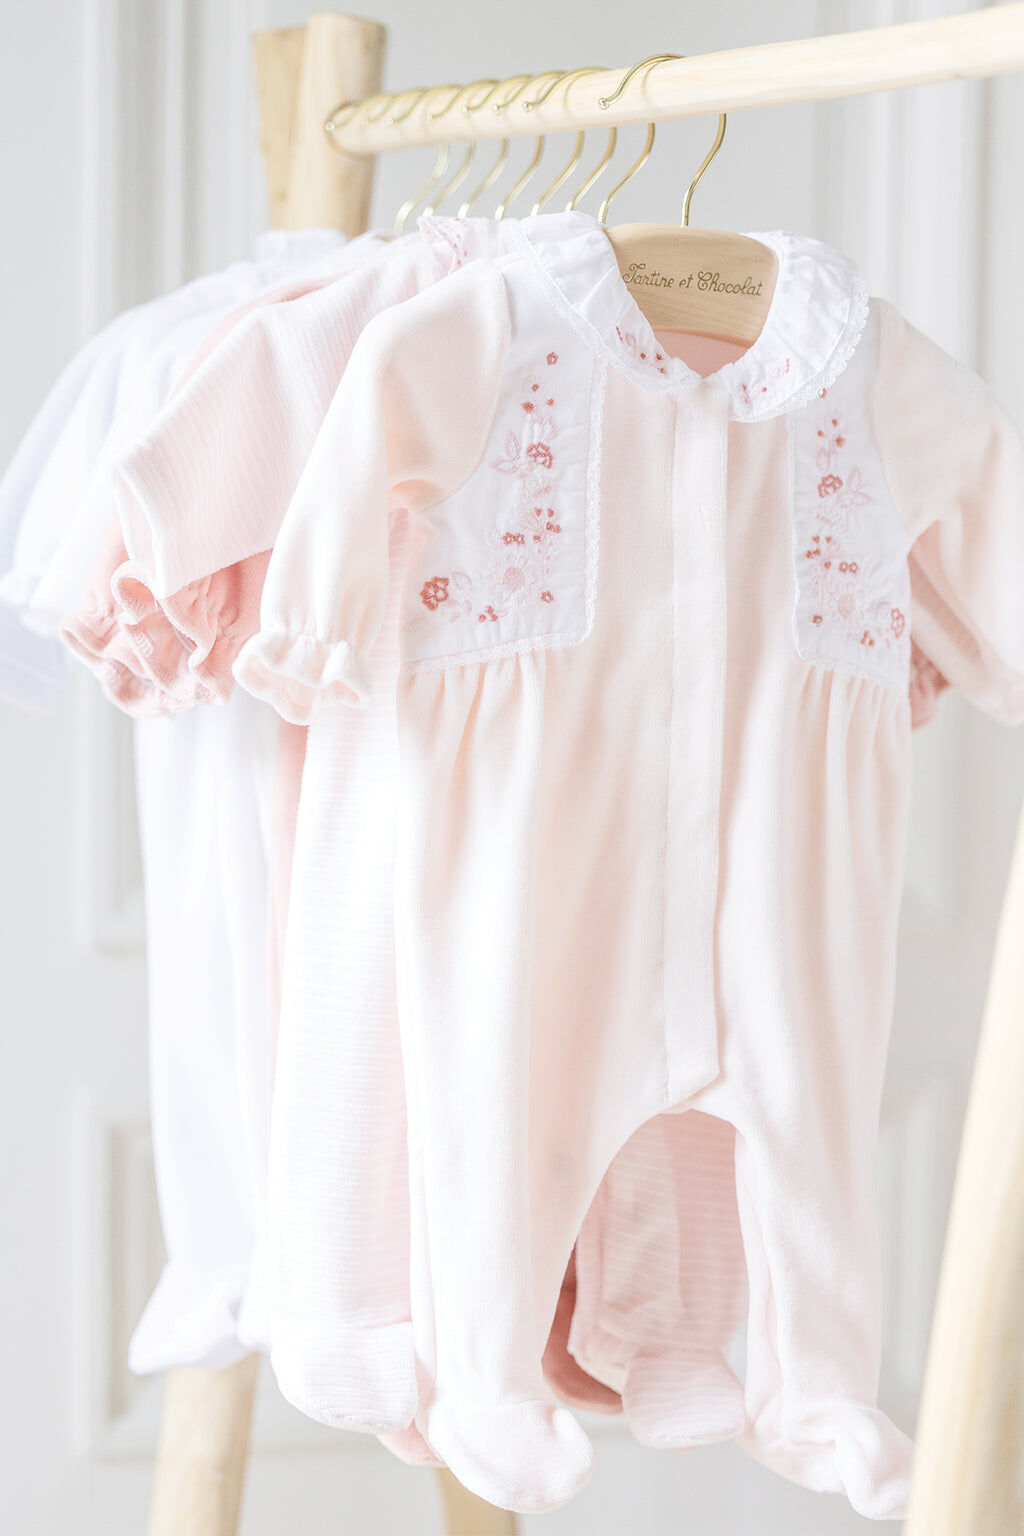 Pyjama - Rose pâle velours broderie fleurs